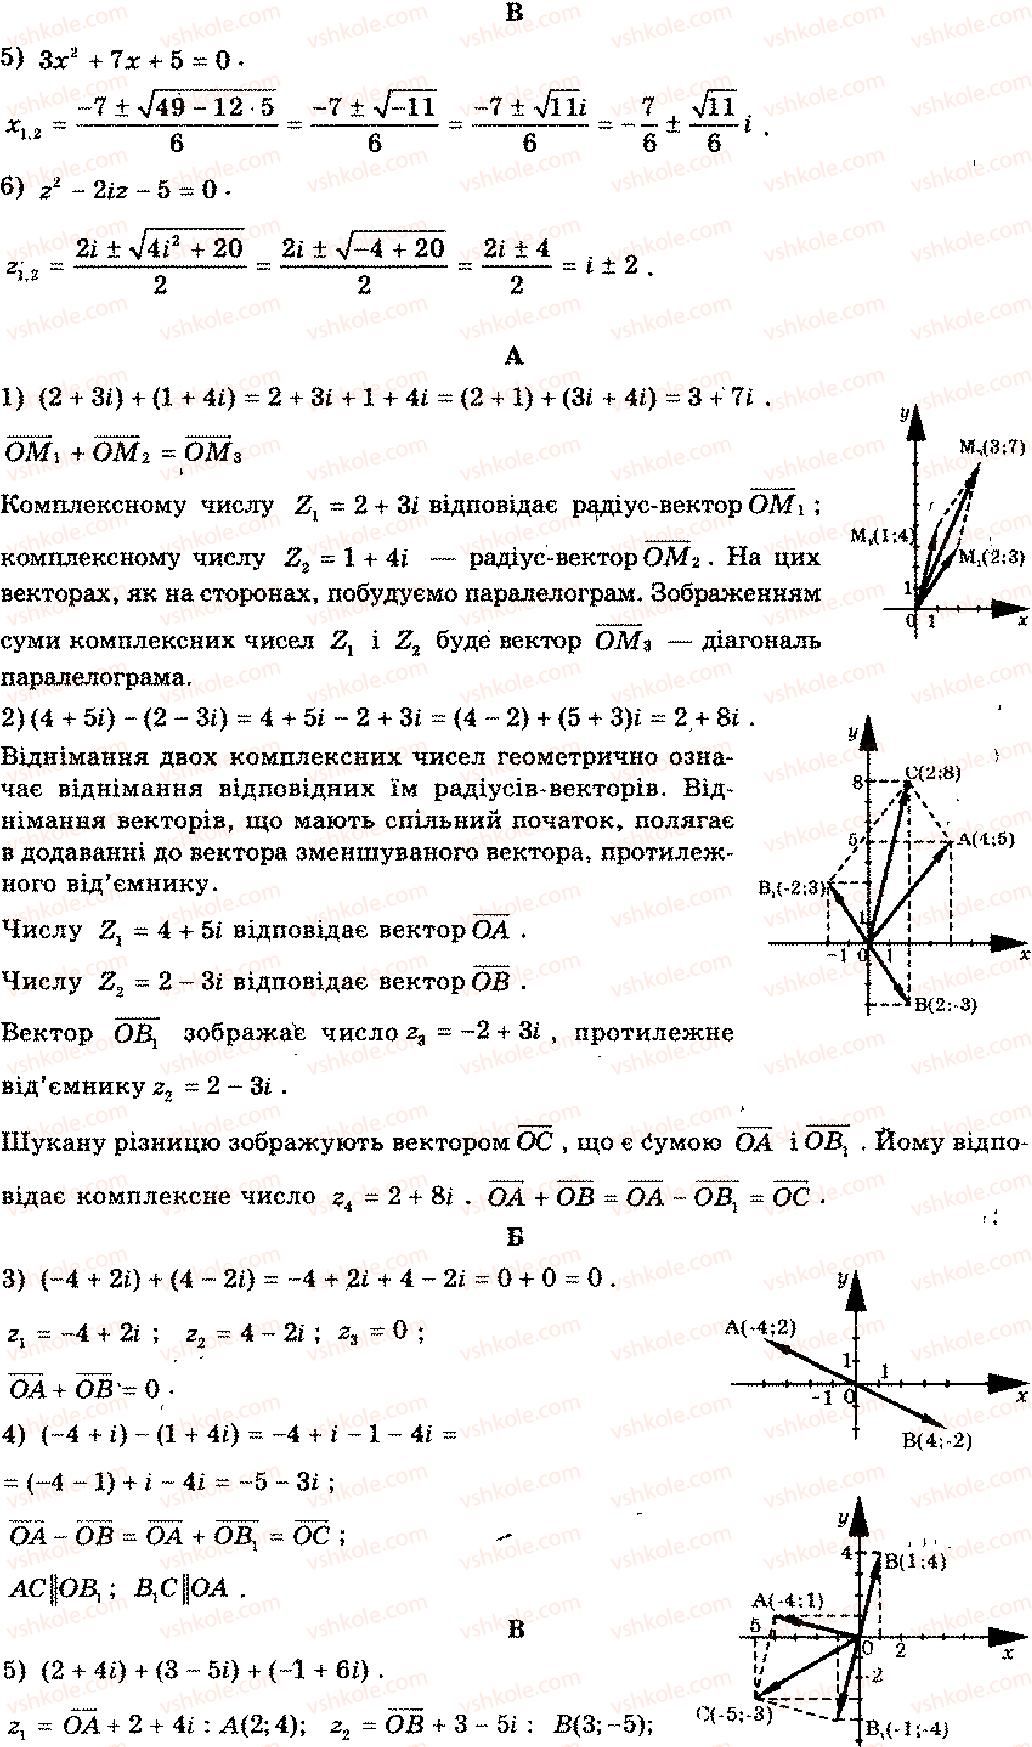 11-algebra-mi-shkil-zi-slepkan-os-dubinchuk-2006--rozdil-11-kompleksni-chisla-6-rnd1105.jpg